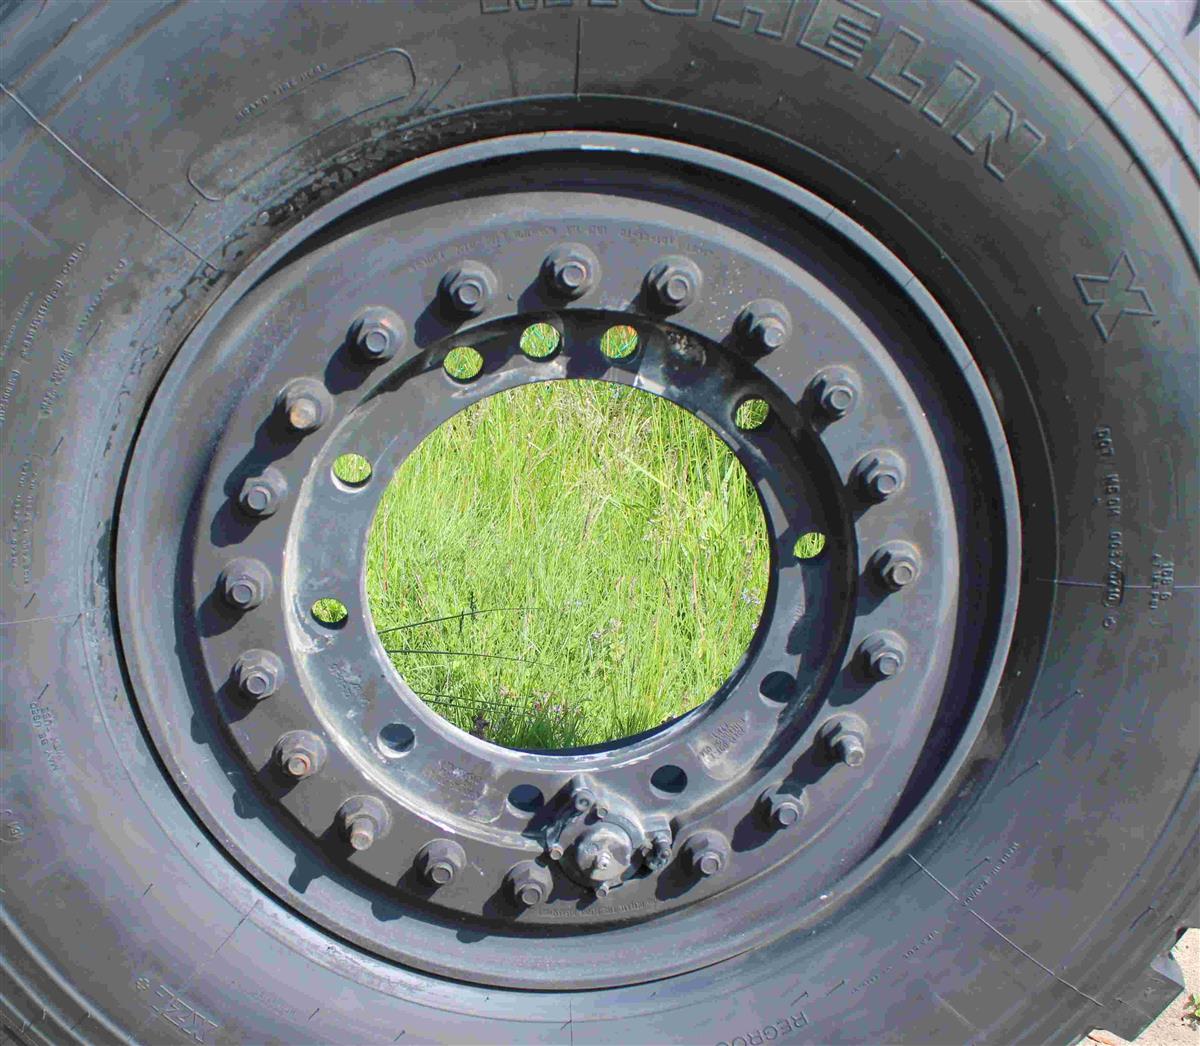 TI-1846 | TI-1846 Michelin 39585R20 XZL Tire Mounted on Hutchinson Aluminum Rim  (2a).jpg